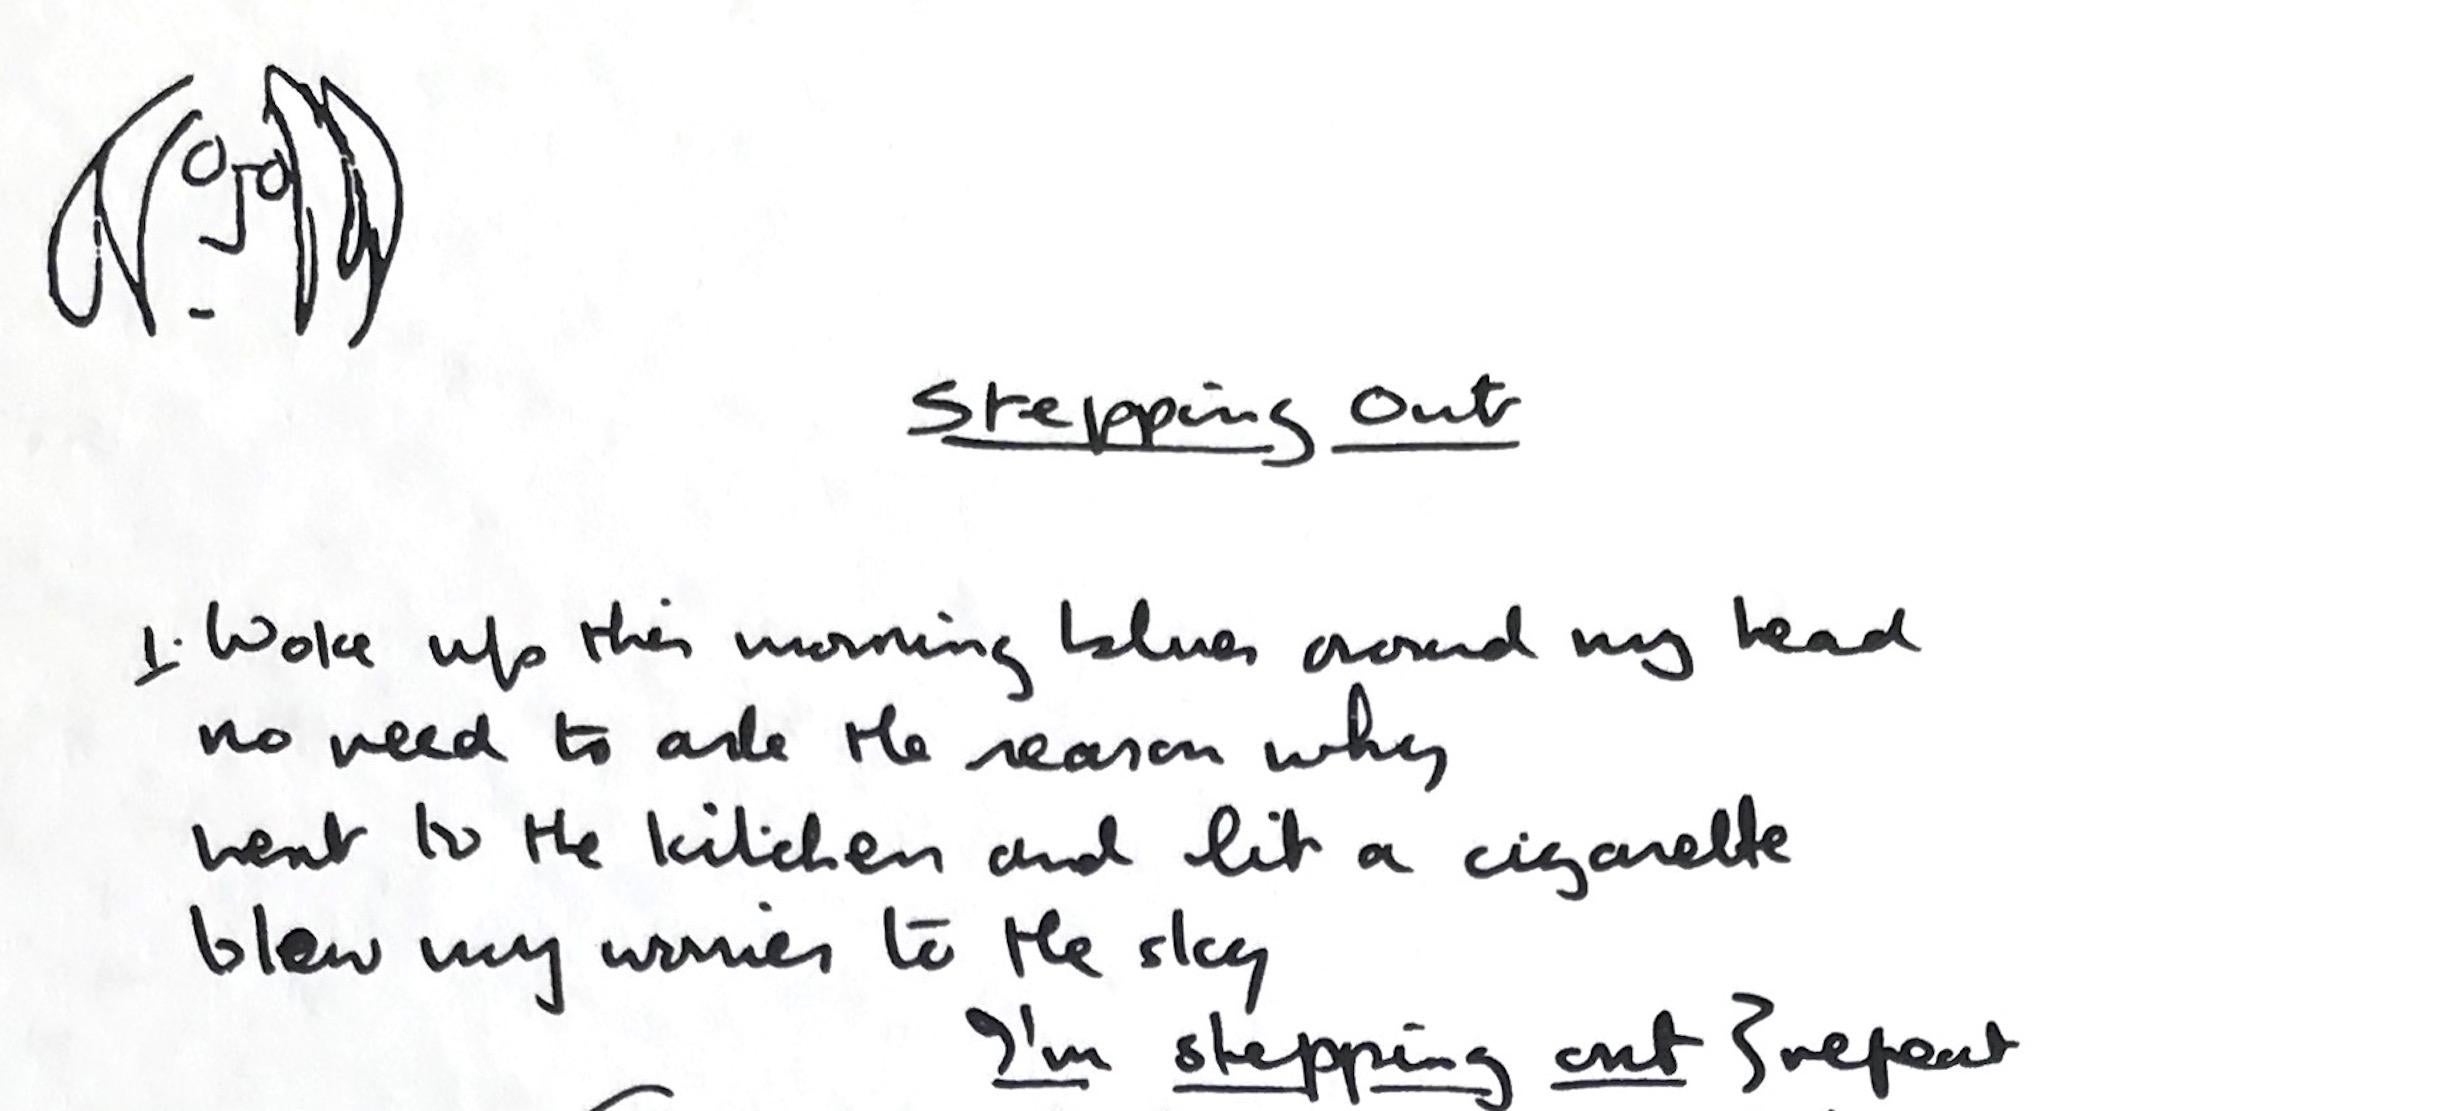 Édition limitée « Stepping Out » écrite à la main - Contemporain Print par John Lennon